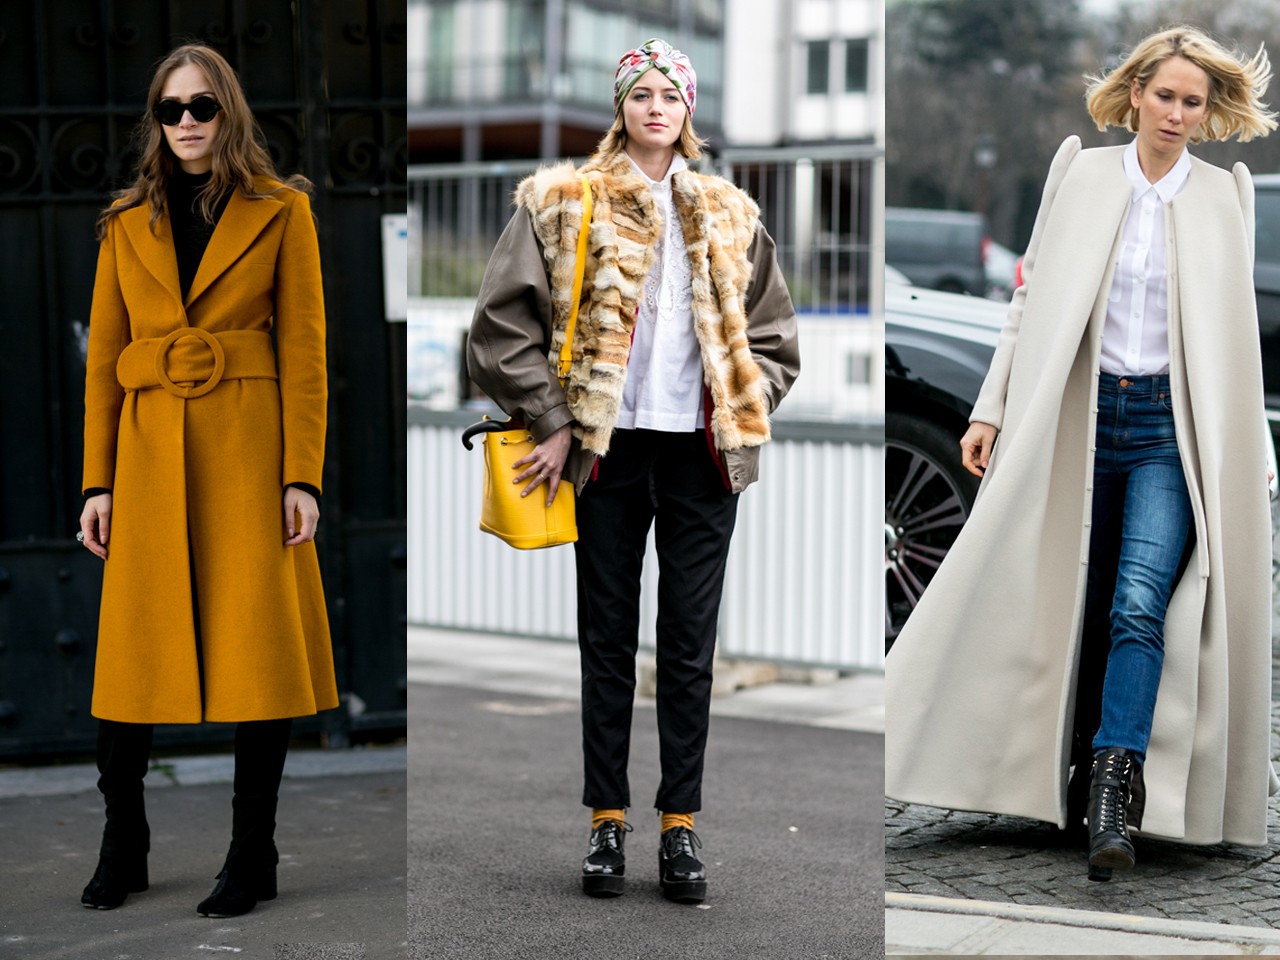 Atualize o look de inverno investindo em elegantes casacos (Foto: Imaxtree)